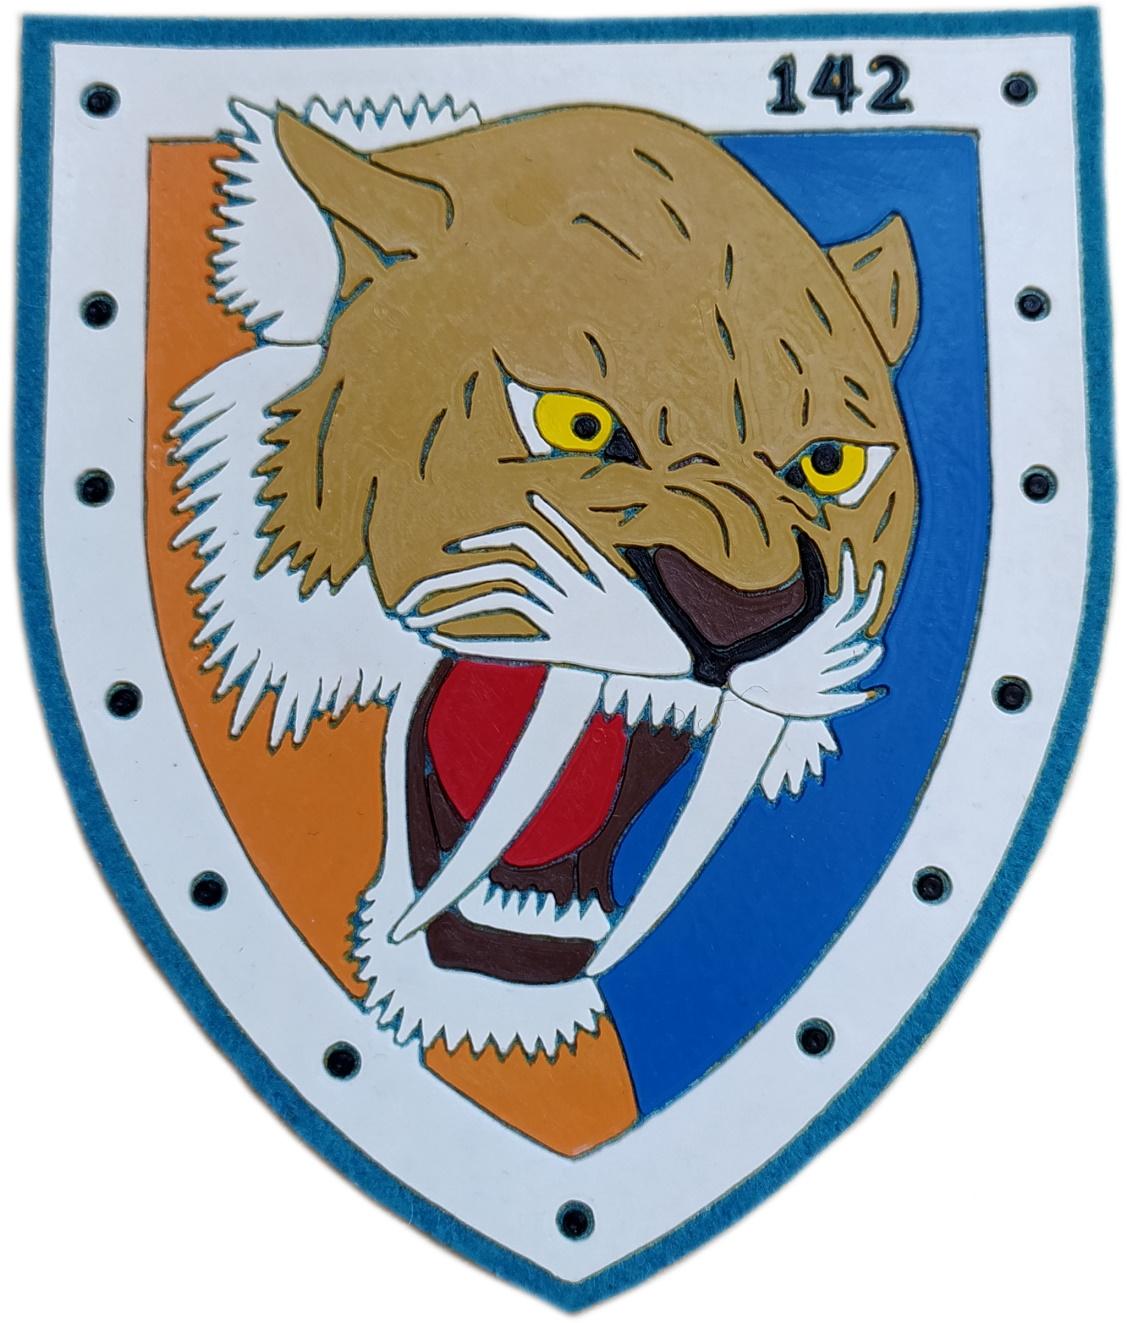 Ejército del aire escuadrón 142 parche insignia emblema distintivo